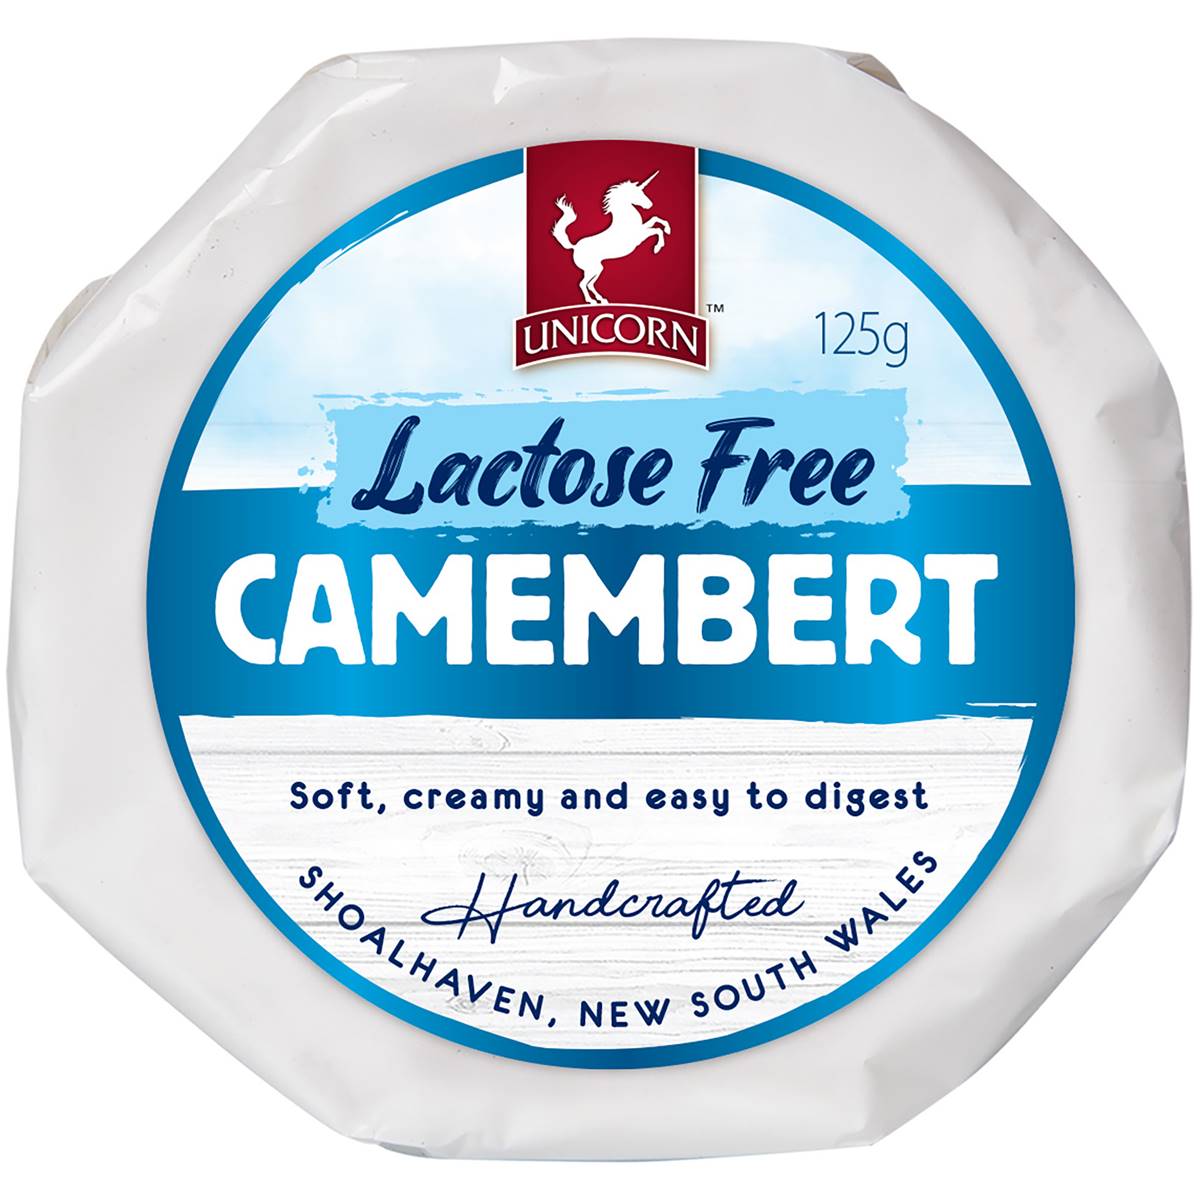 Calories in Unicorn Lactose Free Camembert